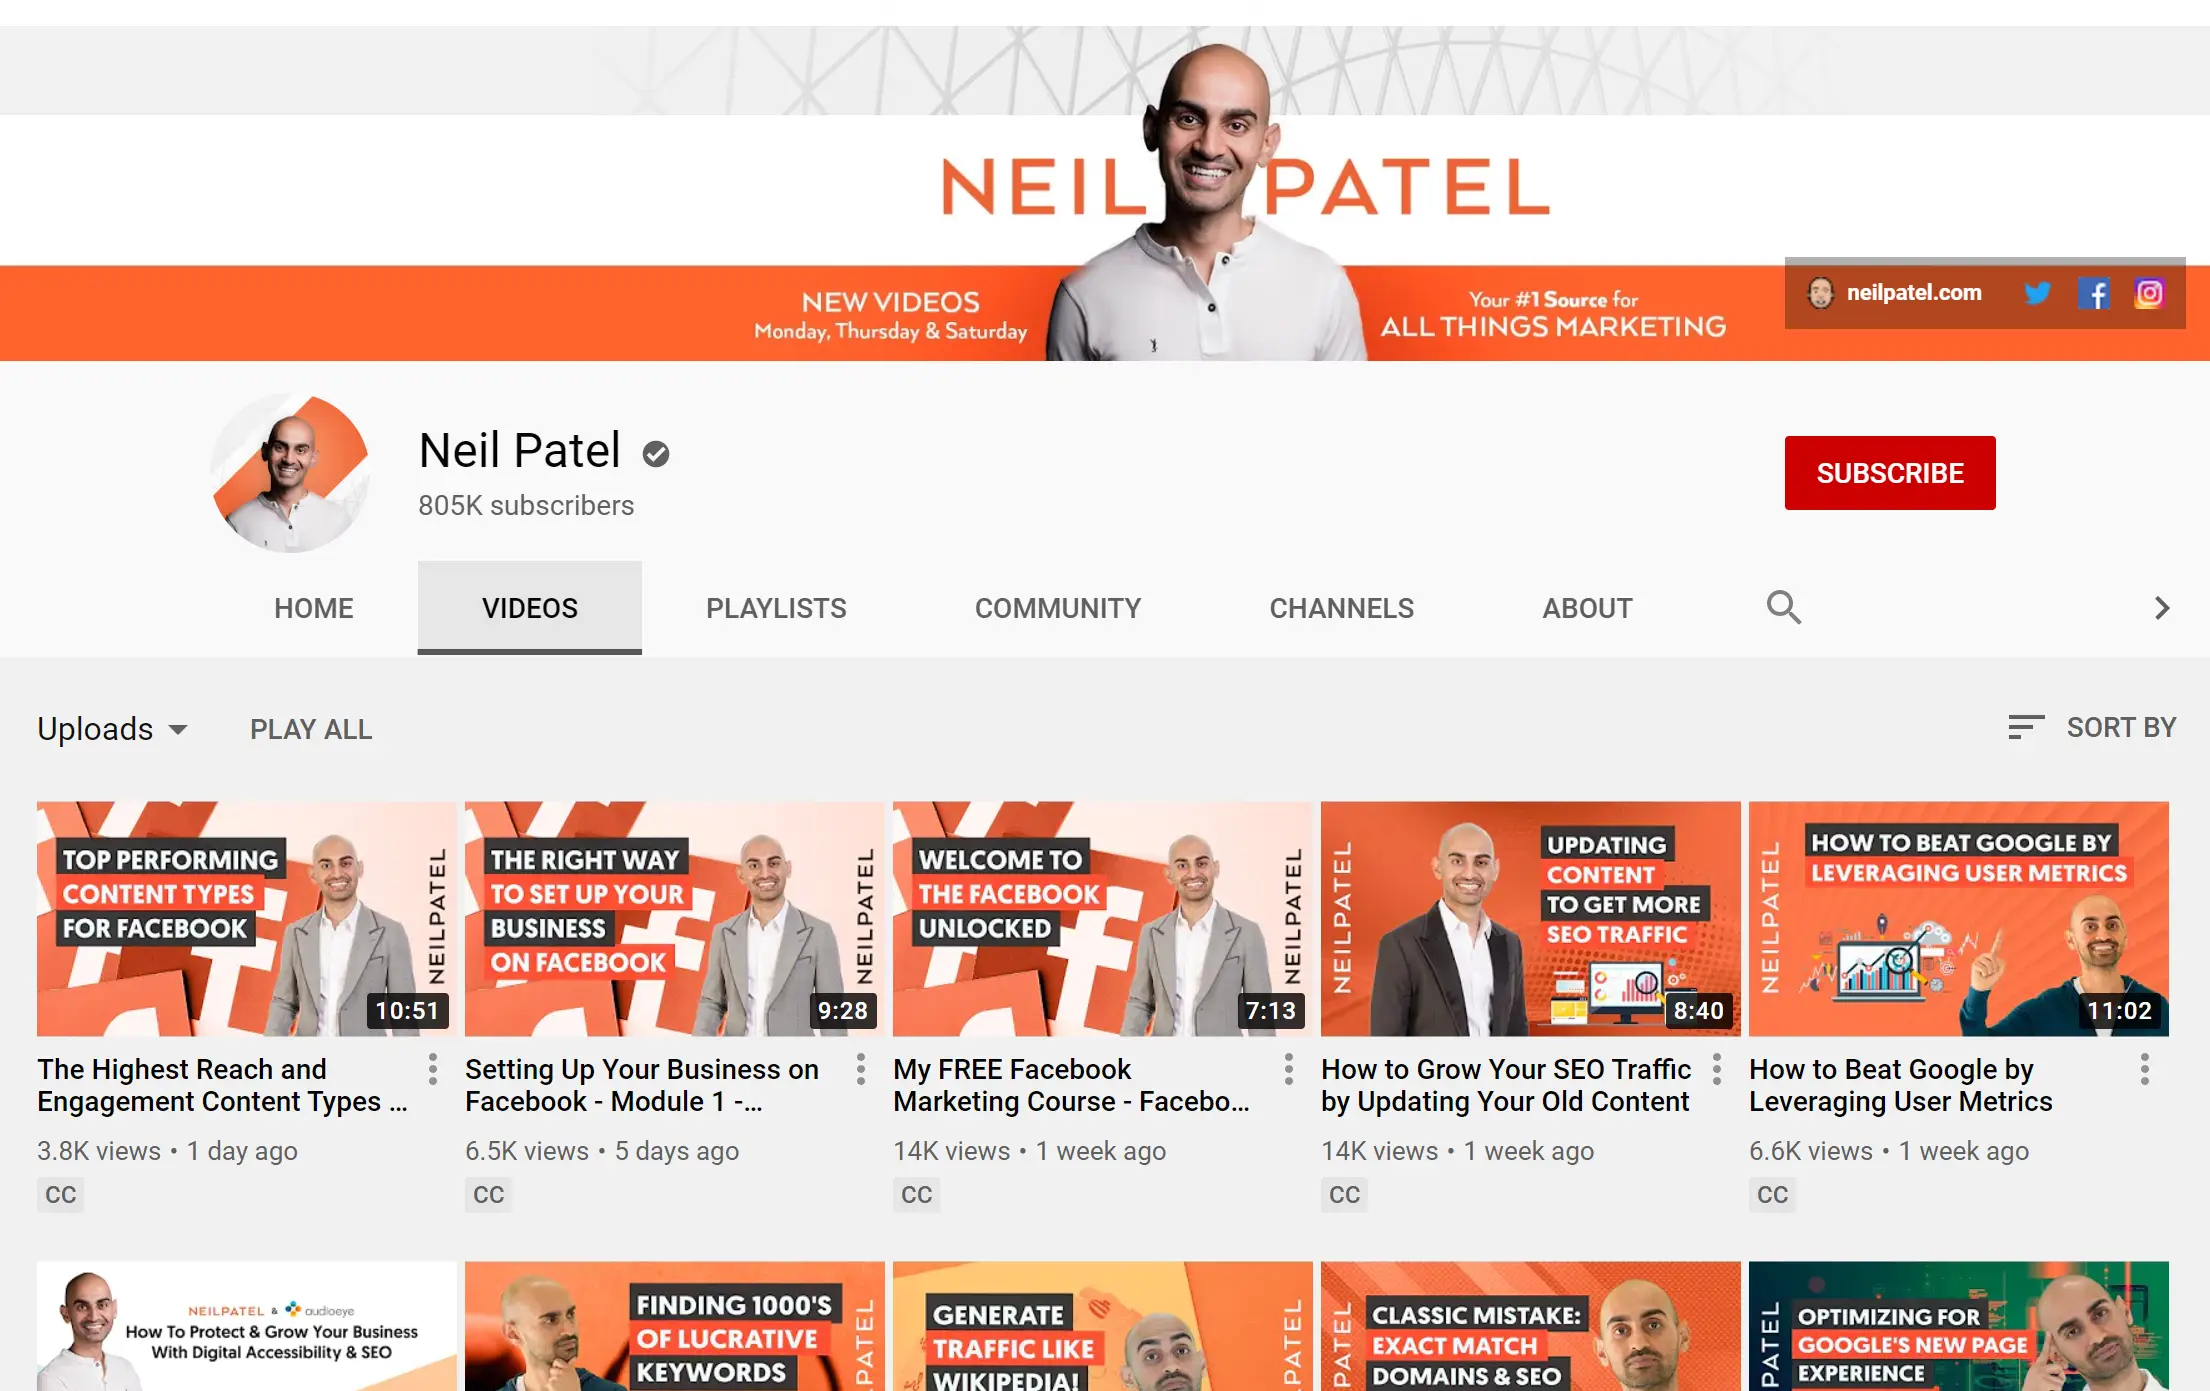 Neil Patel's YouTube channel